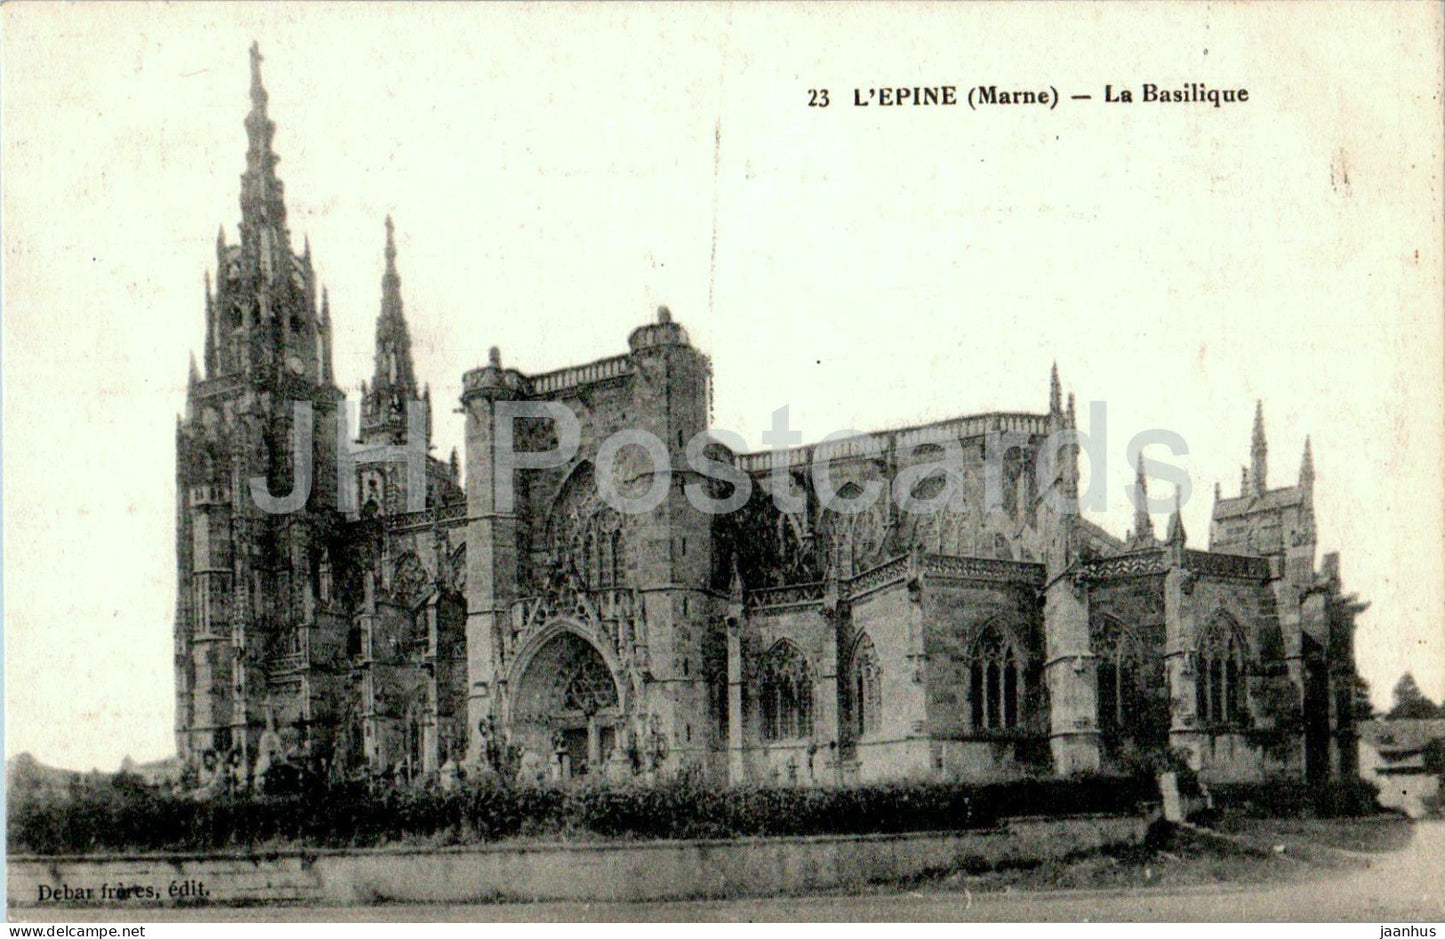 L'Epine - La Basilique - cathedral - 23 - old postcard - France - used - JH Postcards